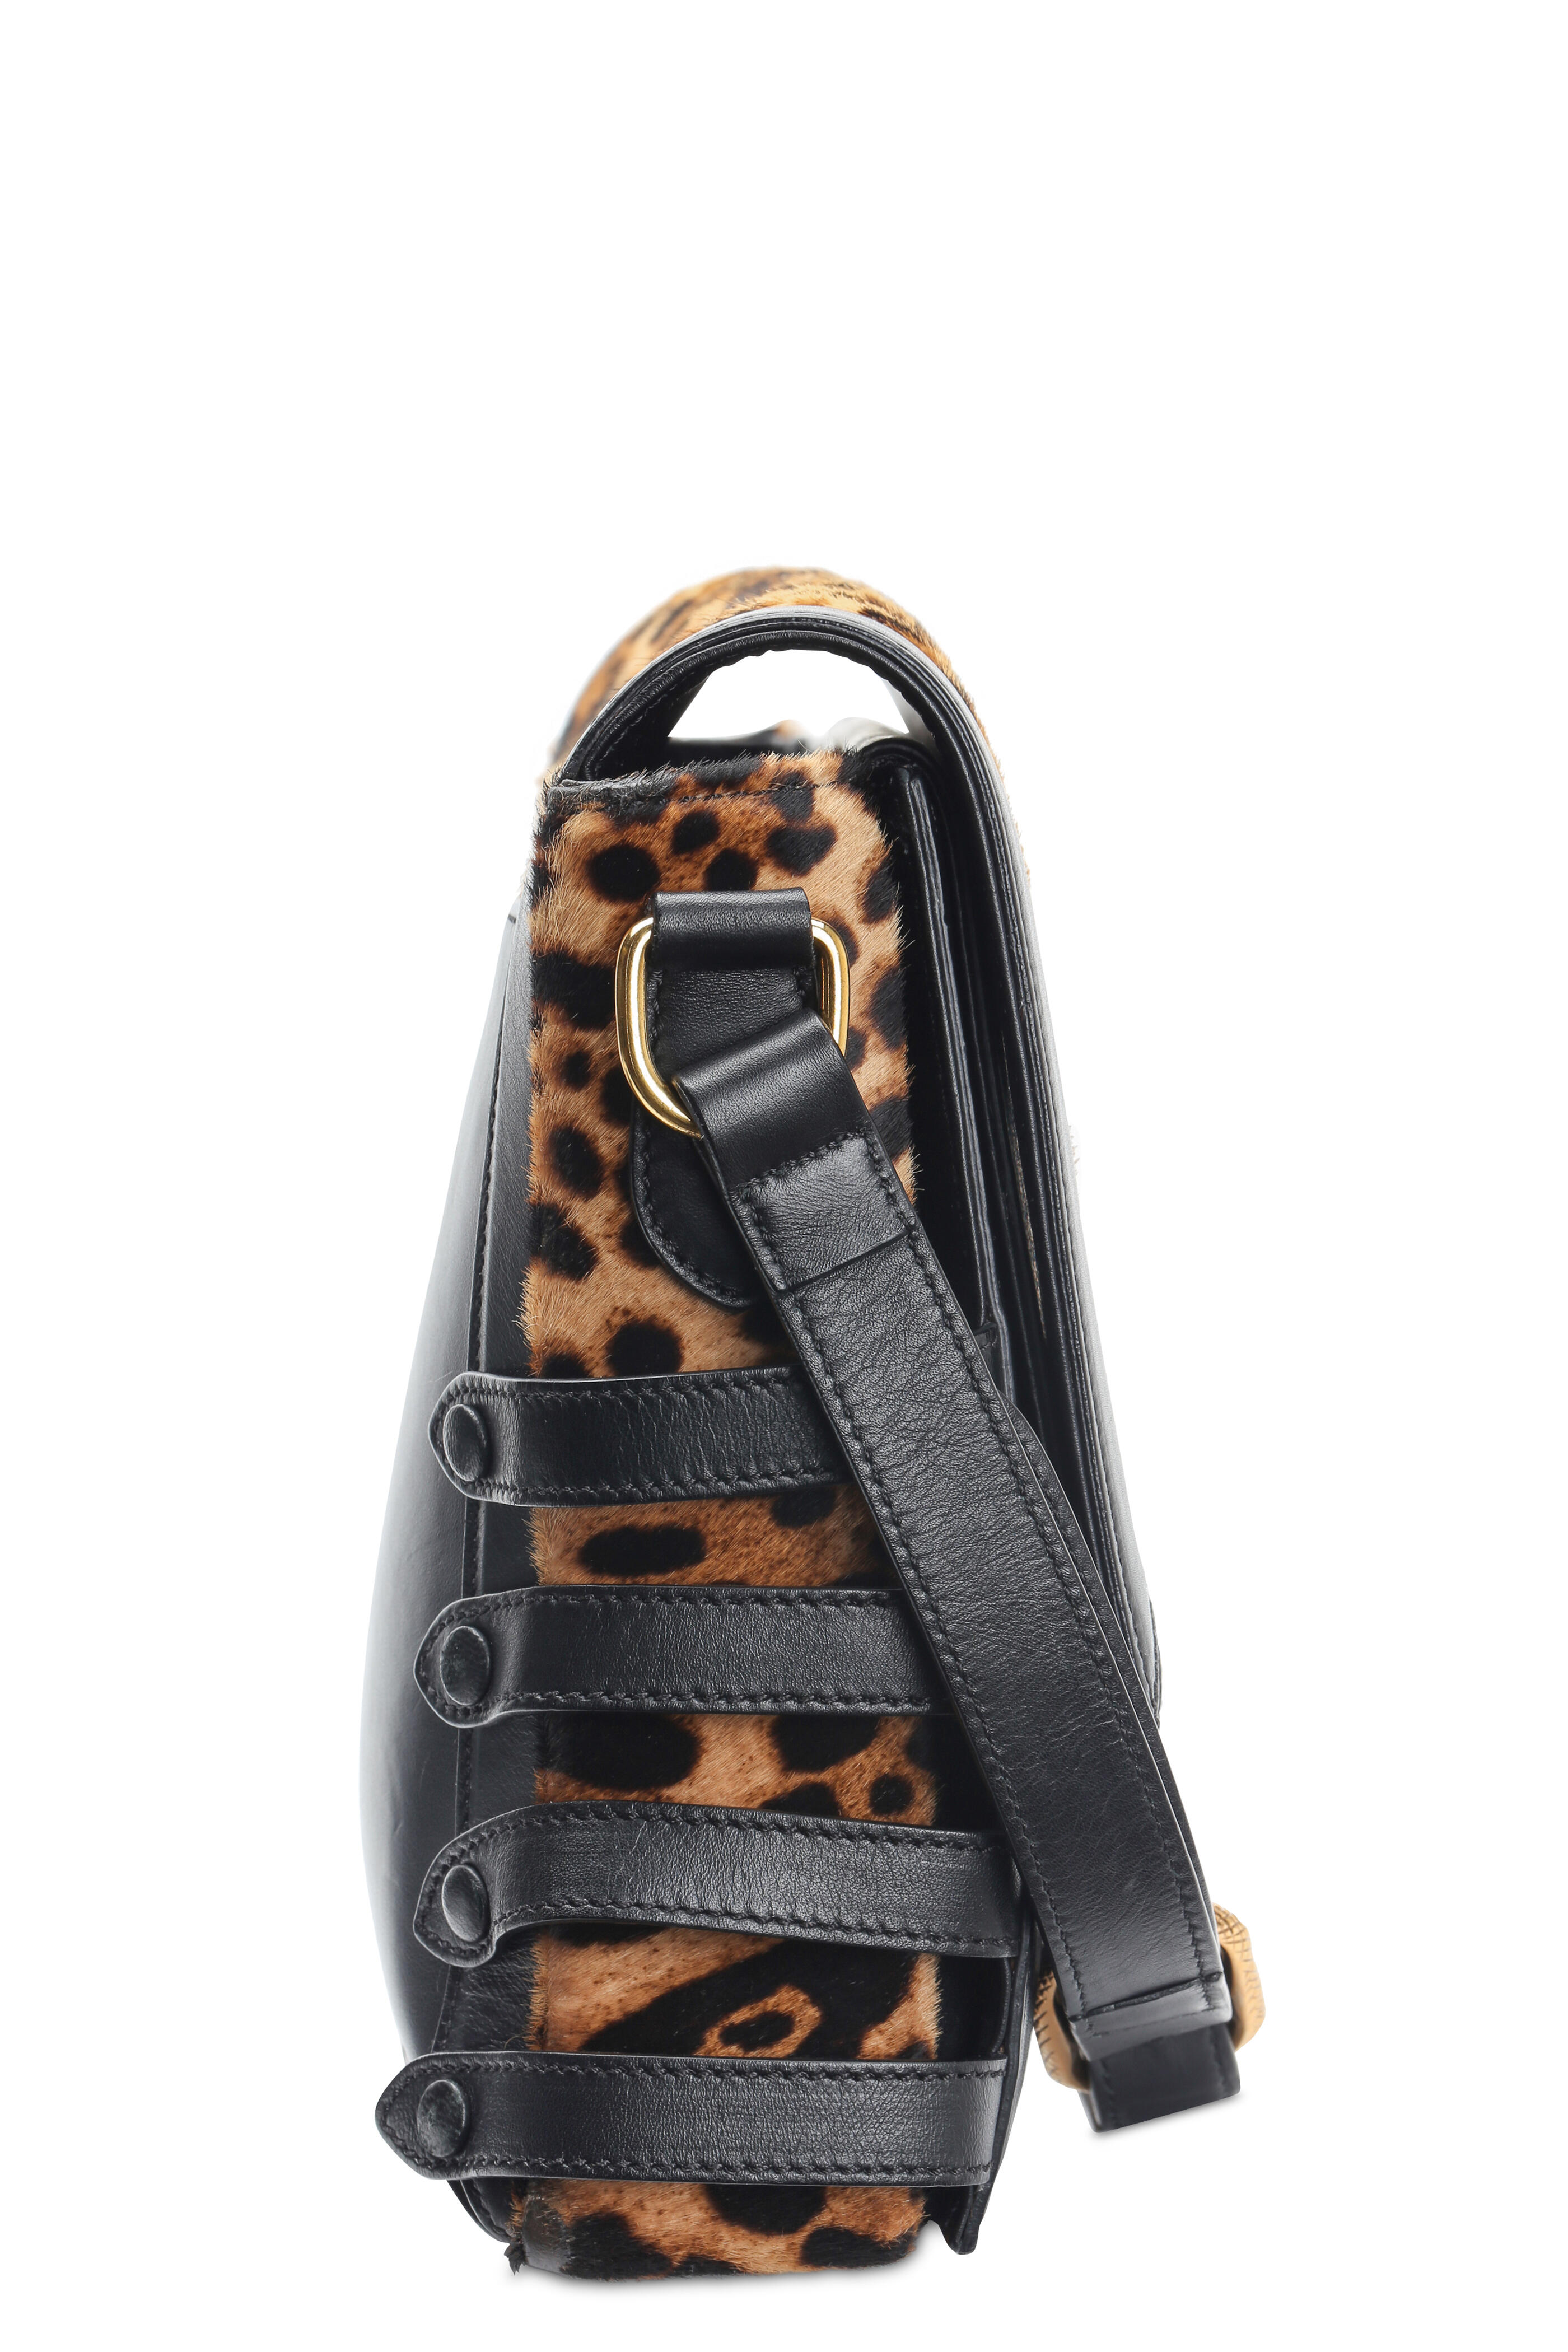 Crossbody Bag Vicky Patent Leather Black Leopard